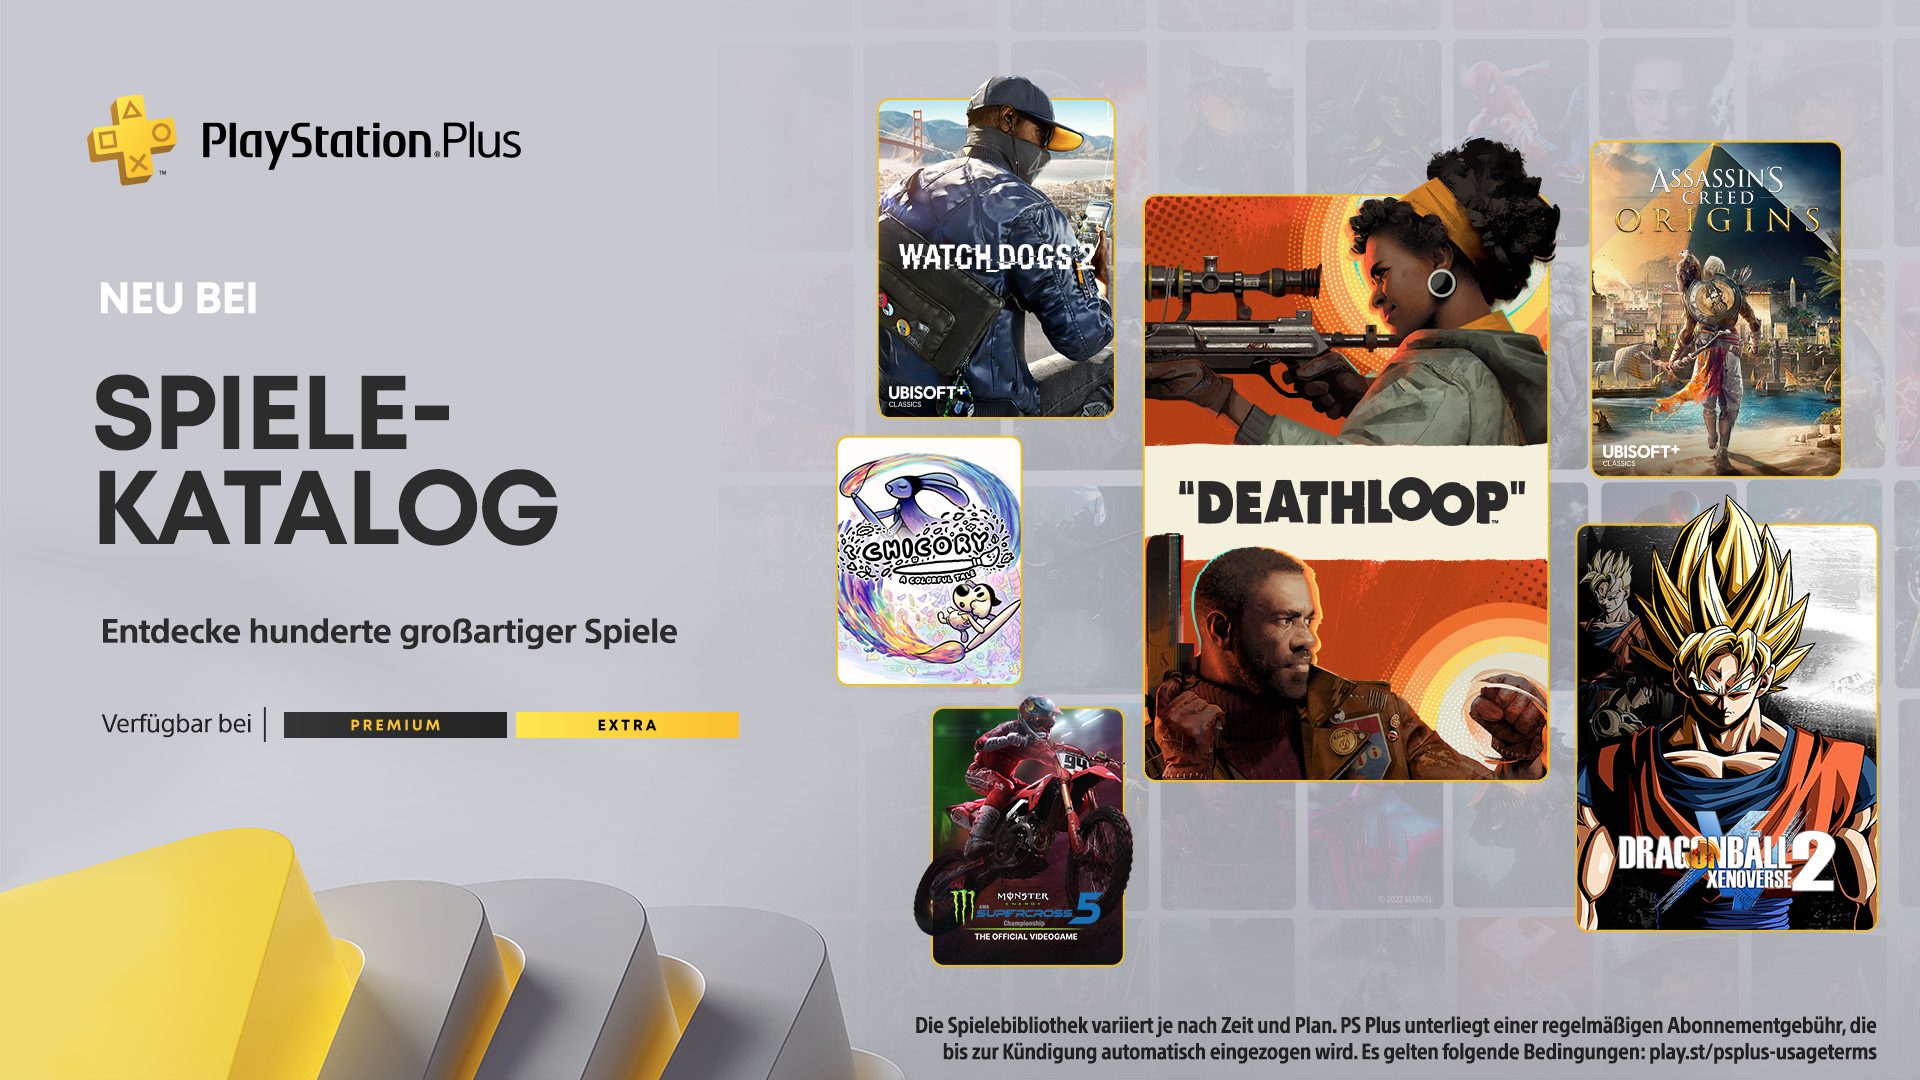 SeptemberSpiele für PlayStation Plus und den Spielekatalog enthüllt